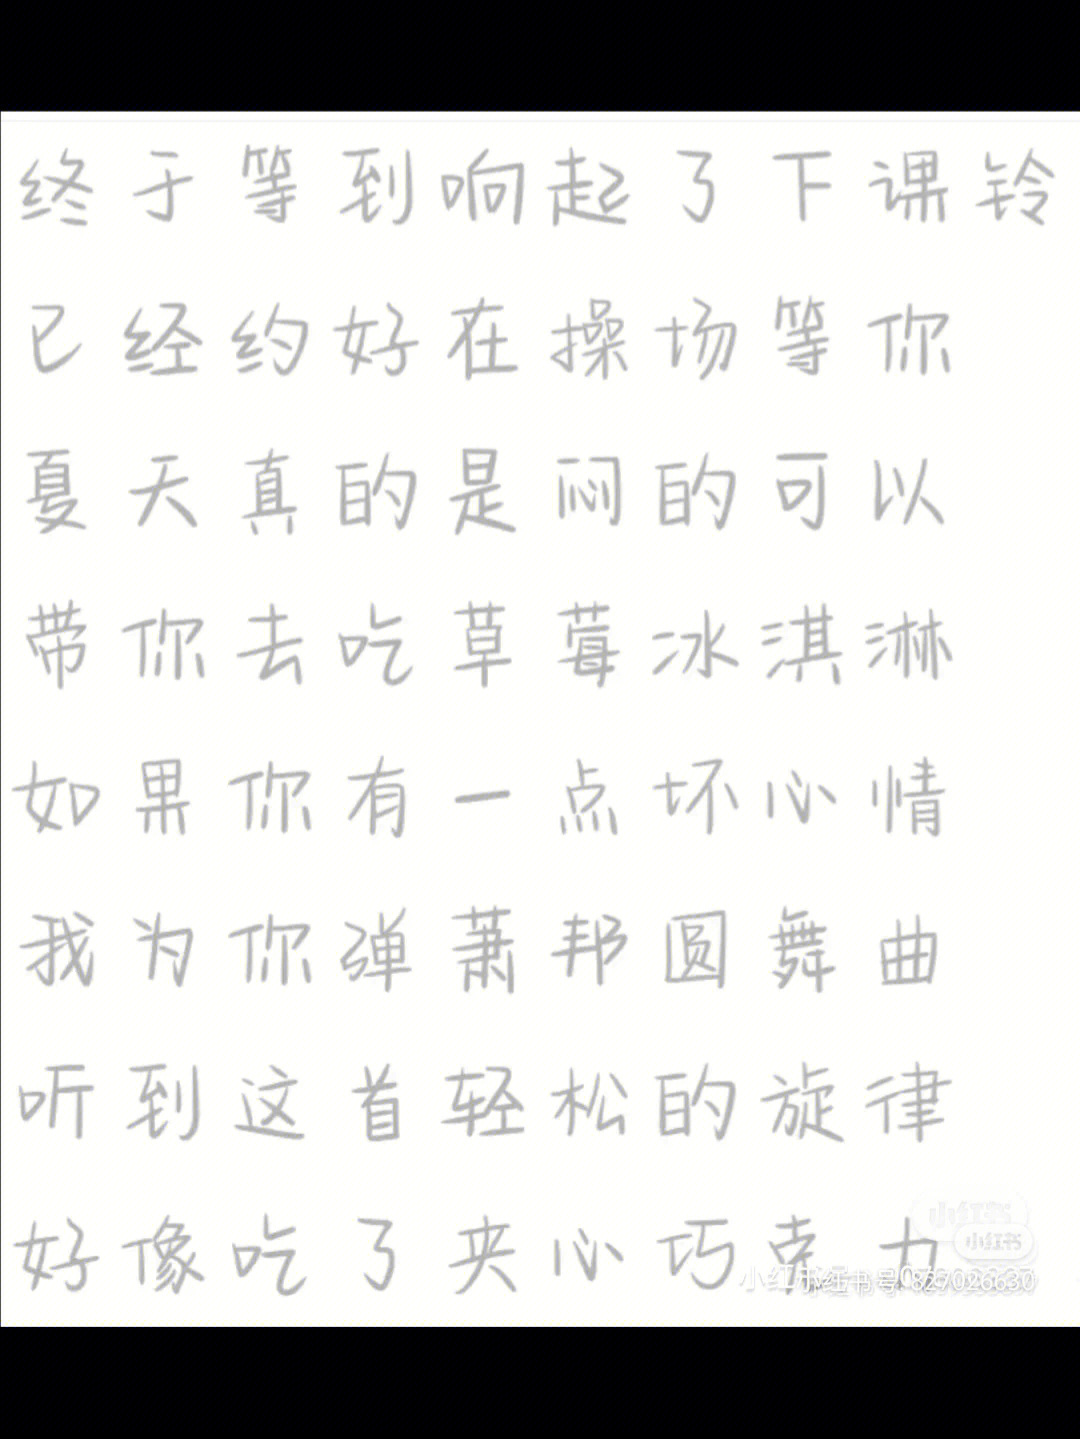 刘耀文奶酪字体图片